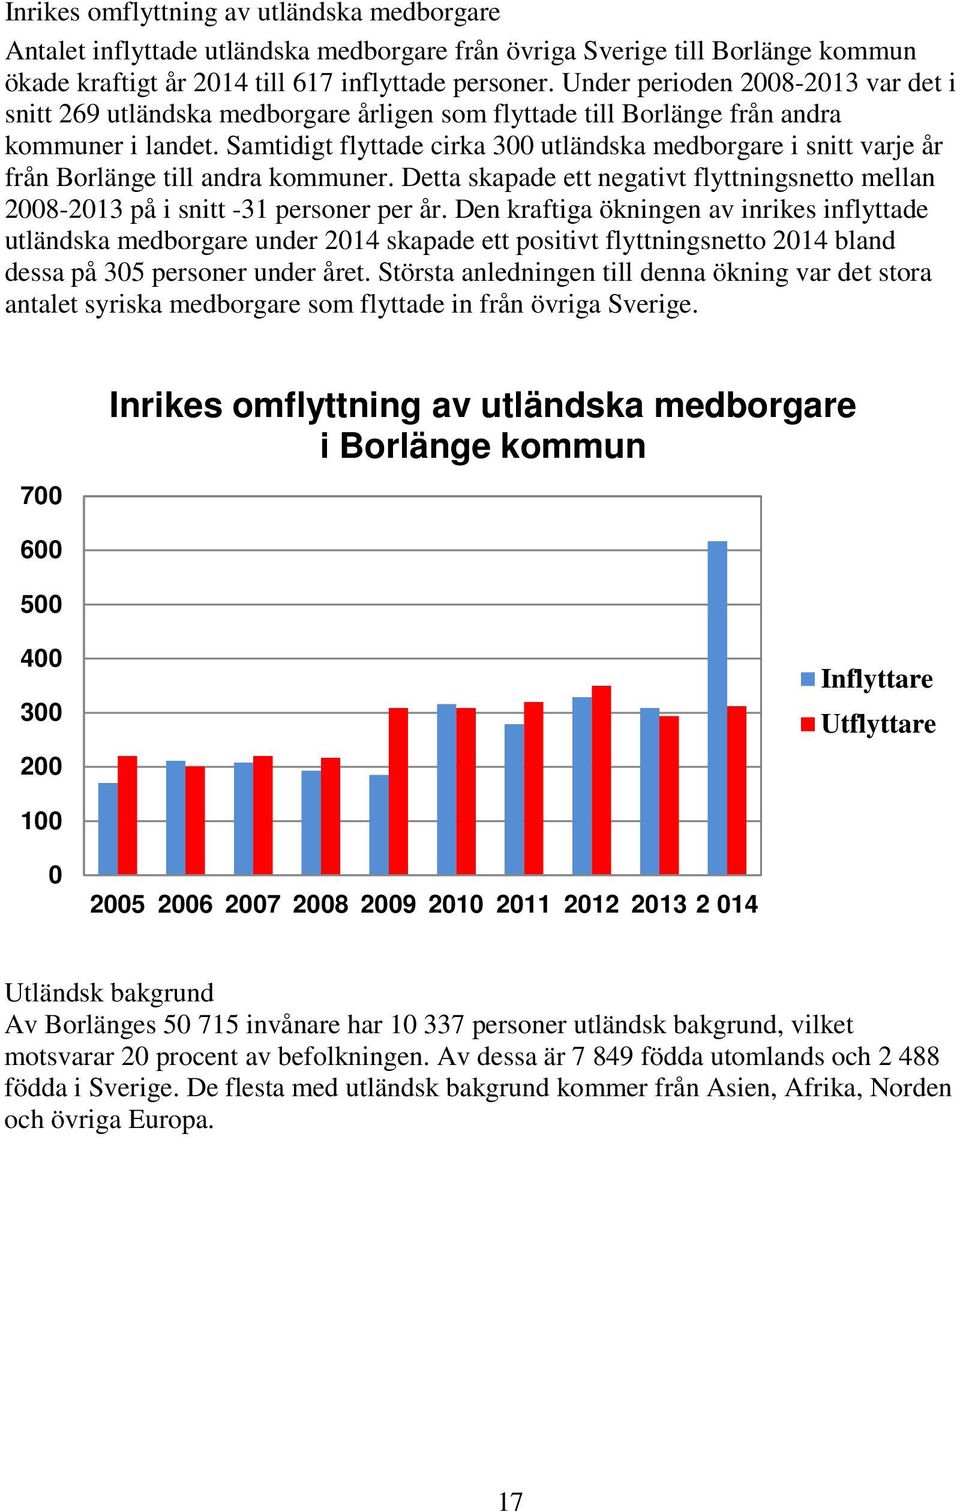 Samtidigt flyttade cirka 300 utländska medborgare i snitt varje år från Borlänge till andra kommuner. Detta skapade ett negativt flyttningsnetto mellan 2008-2013 på i snitt -31 personer per år.